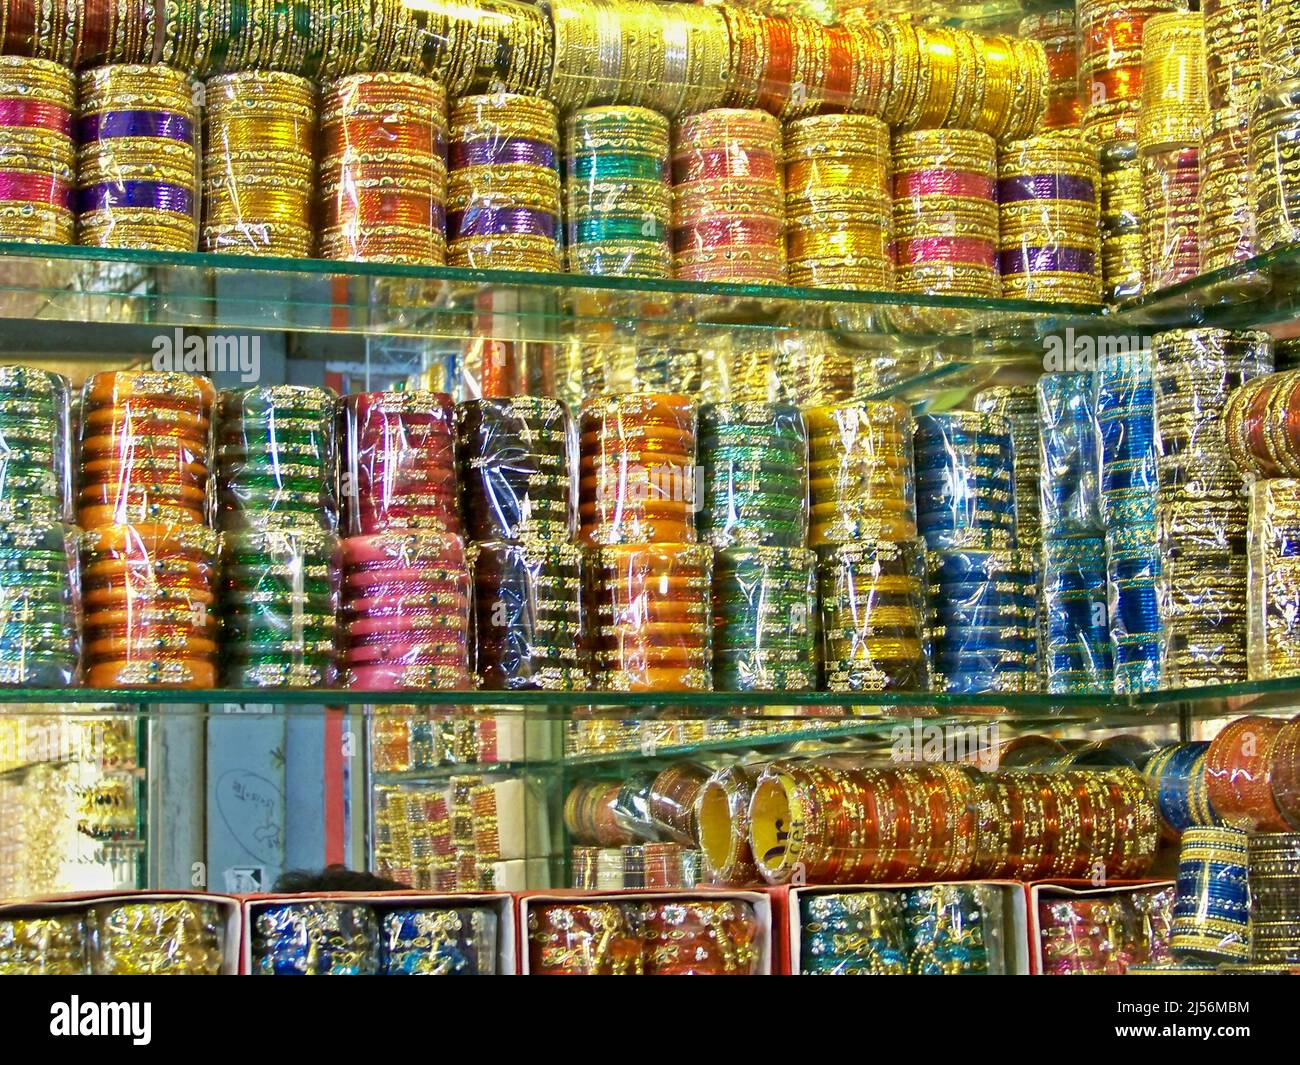 Les zones de Chawk Bazar dans le vieux Dhaka, connu comme le centre de tous  les types de bracelets, les magasins présentent des bracelets de  différentes couleurs et des dessins avant Eid-ul-Fitr.